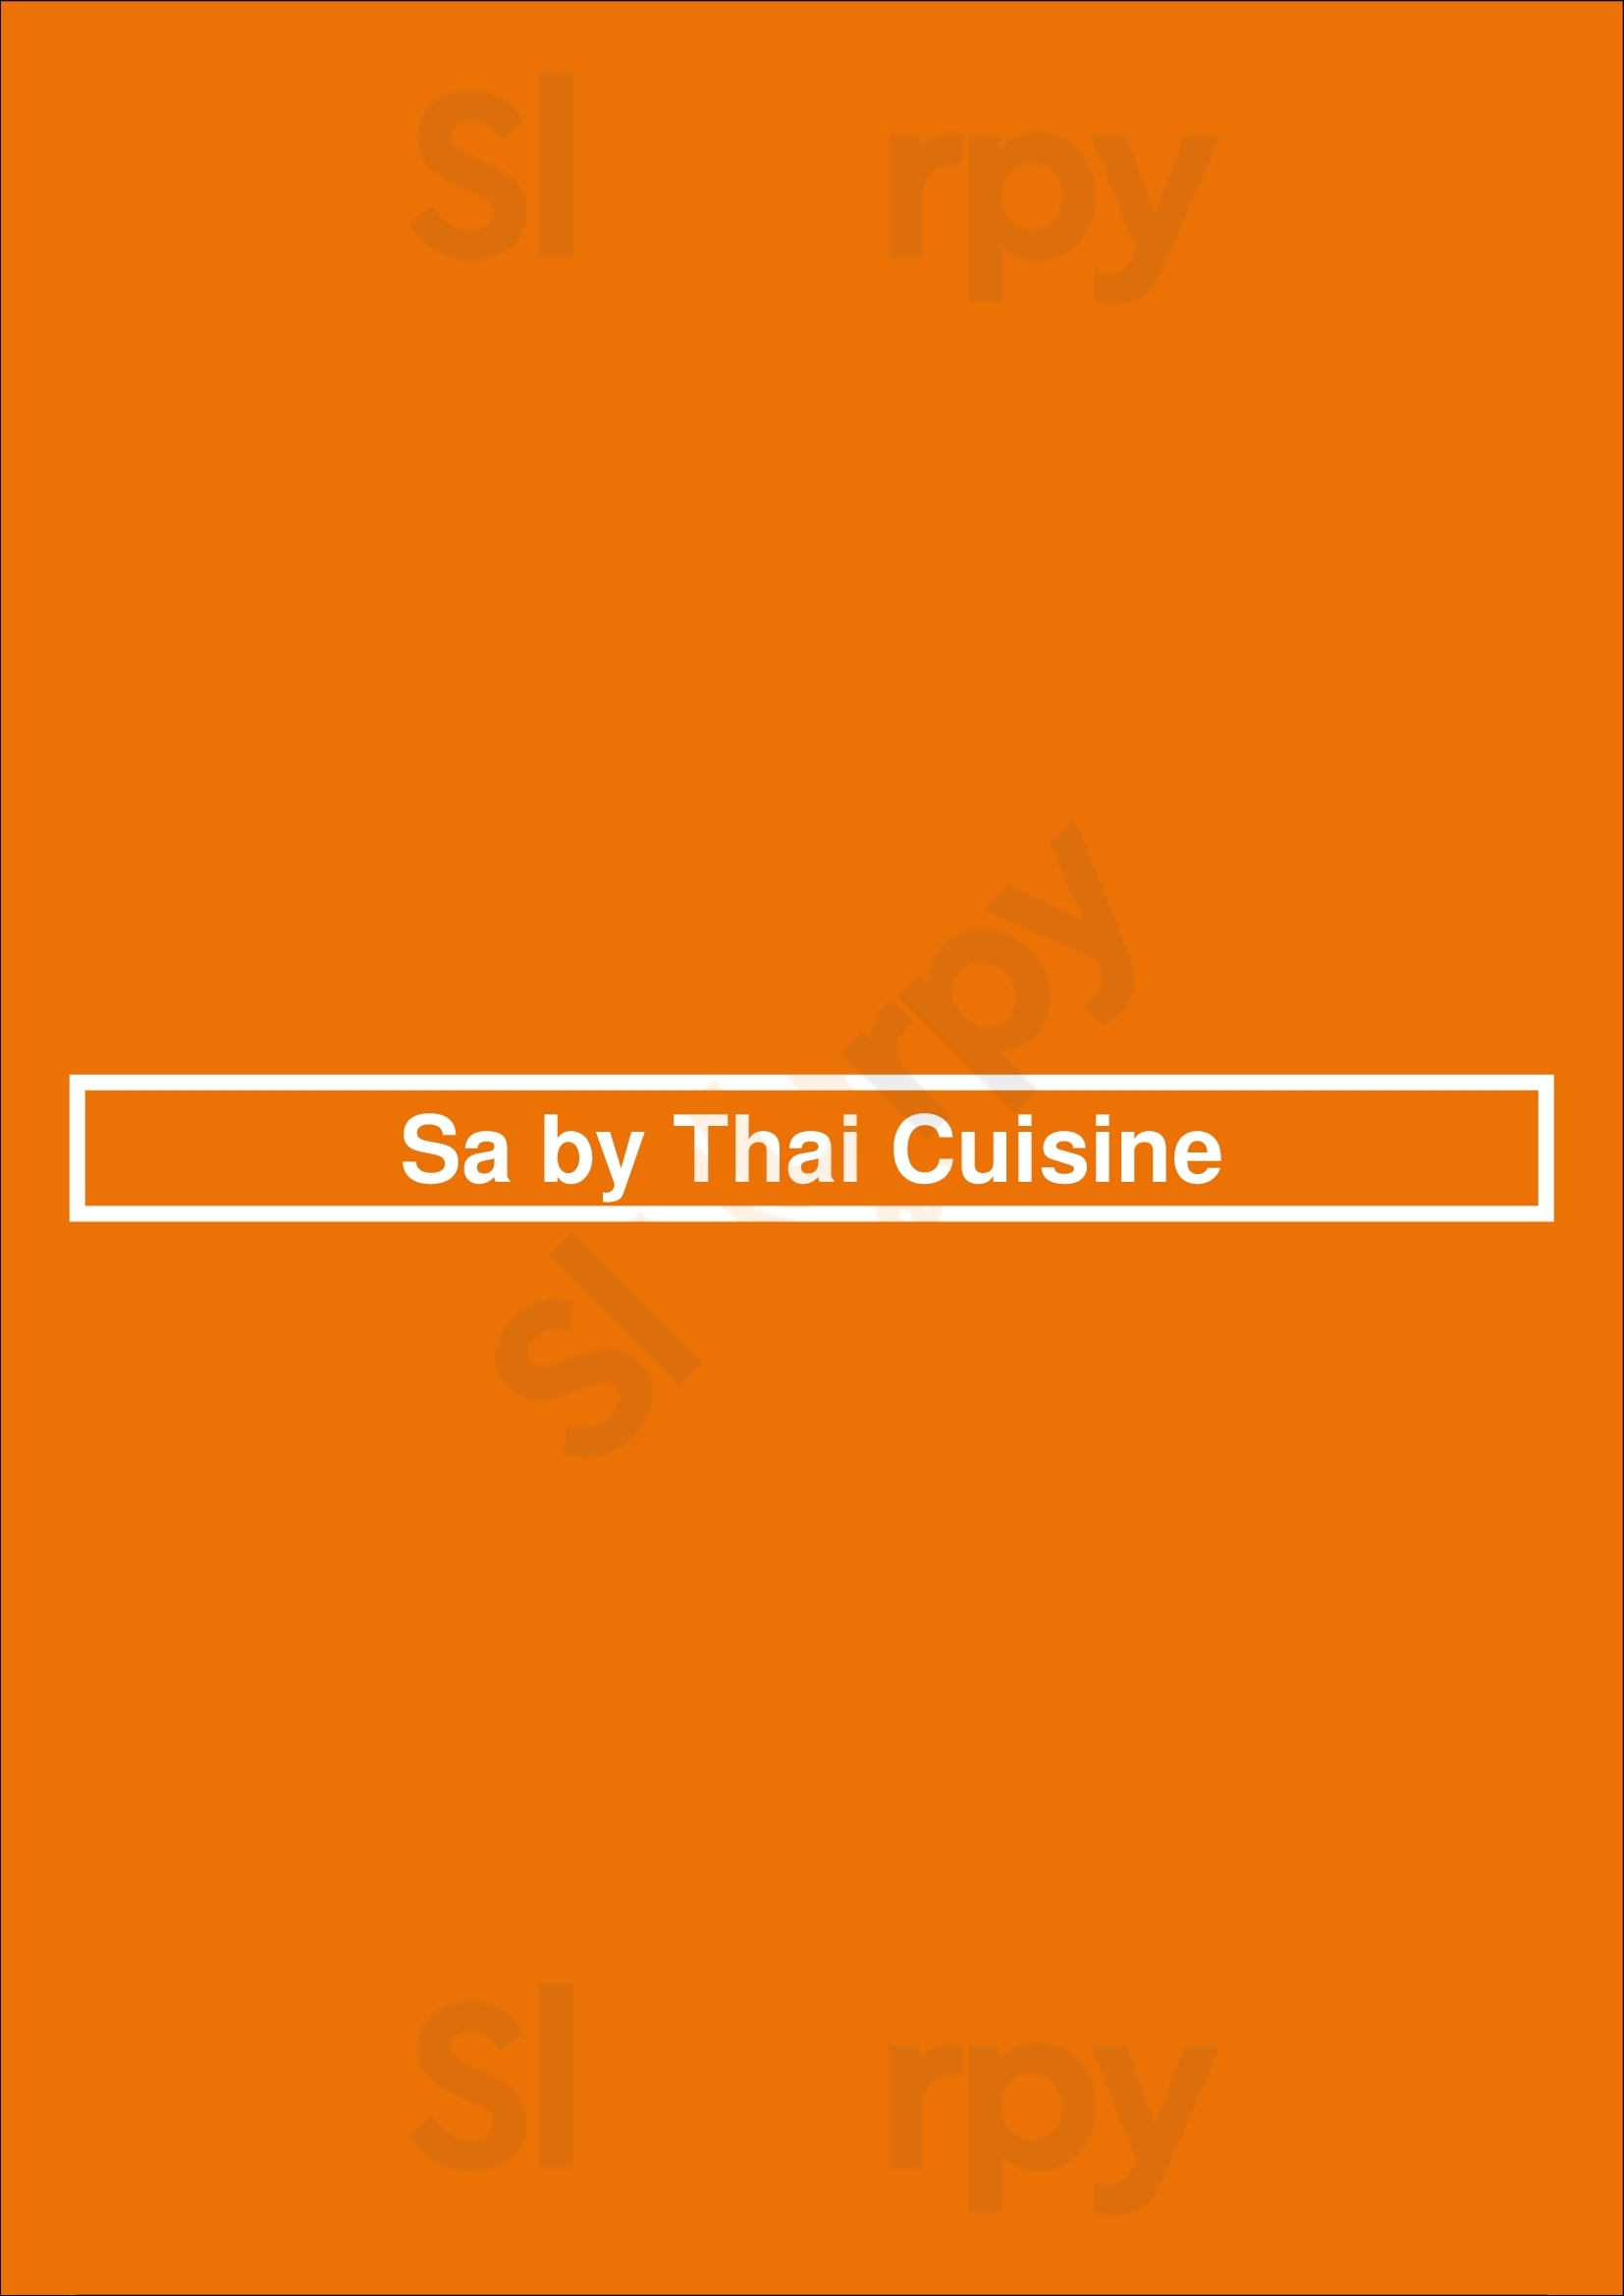 Sa By Thai Cuisine San Jose Menu - 1